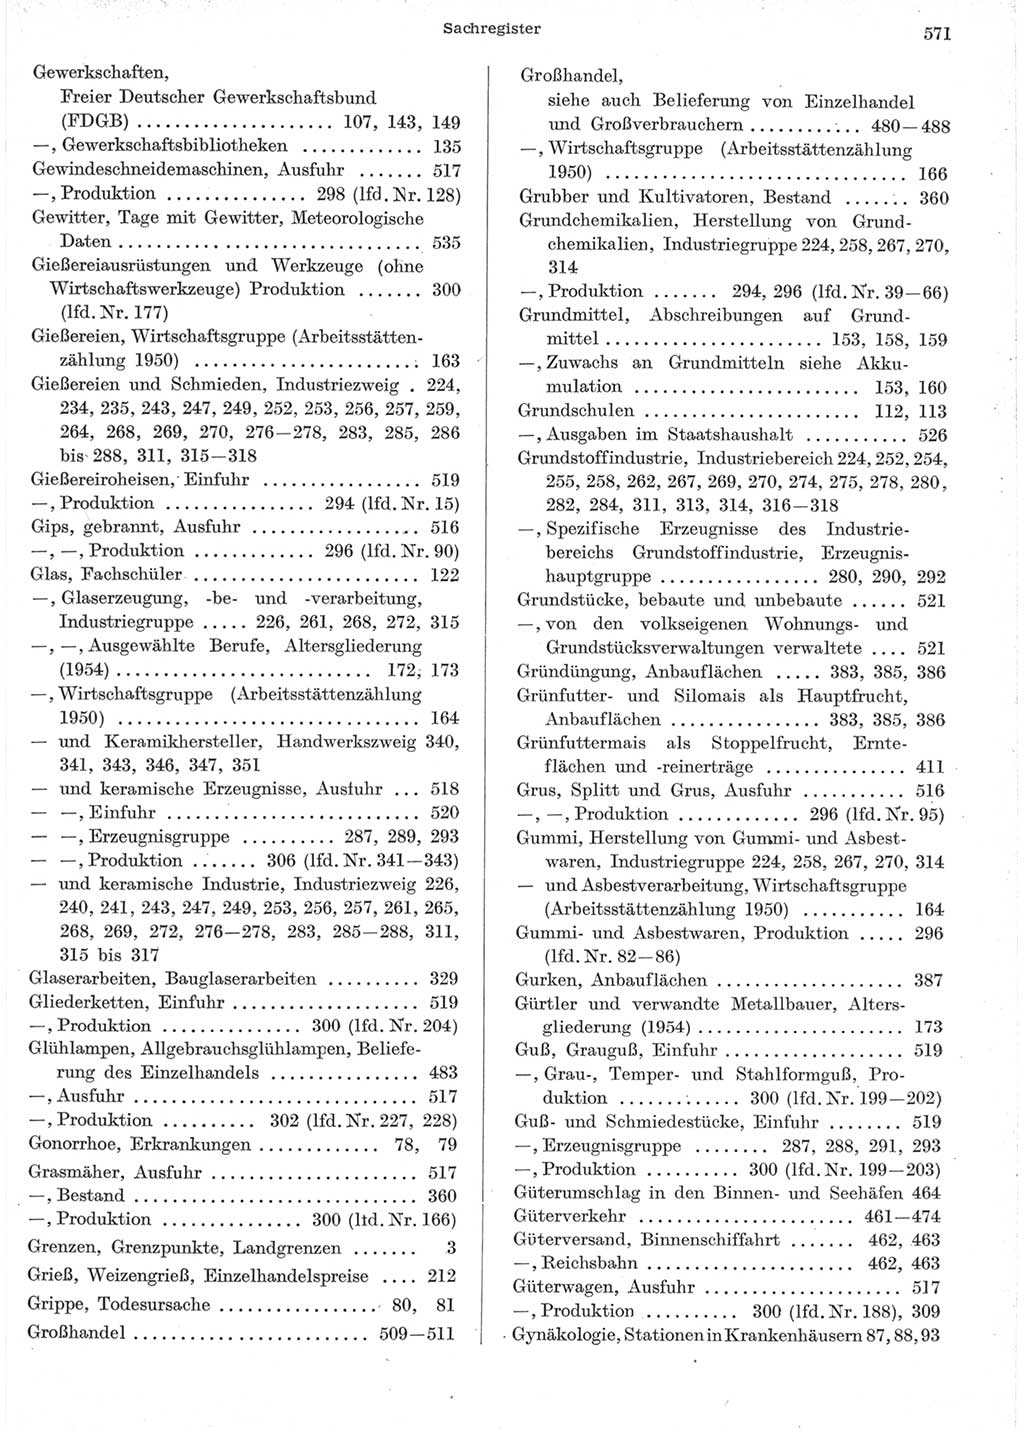 Statistisches Jahrbuch der Deutschen Demokratischen Republik (DDR) 1957, Seite 571 (Stat. Jb. DDR 1957, S. 571)